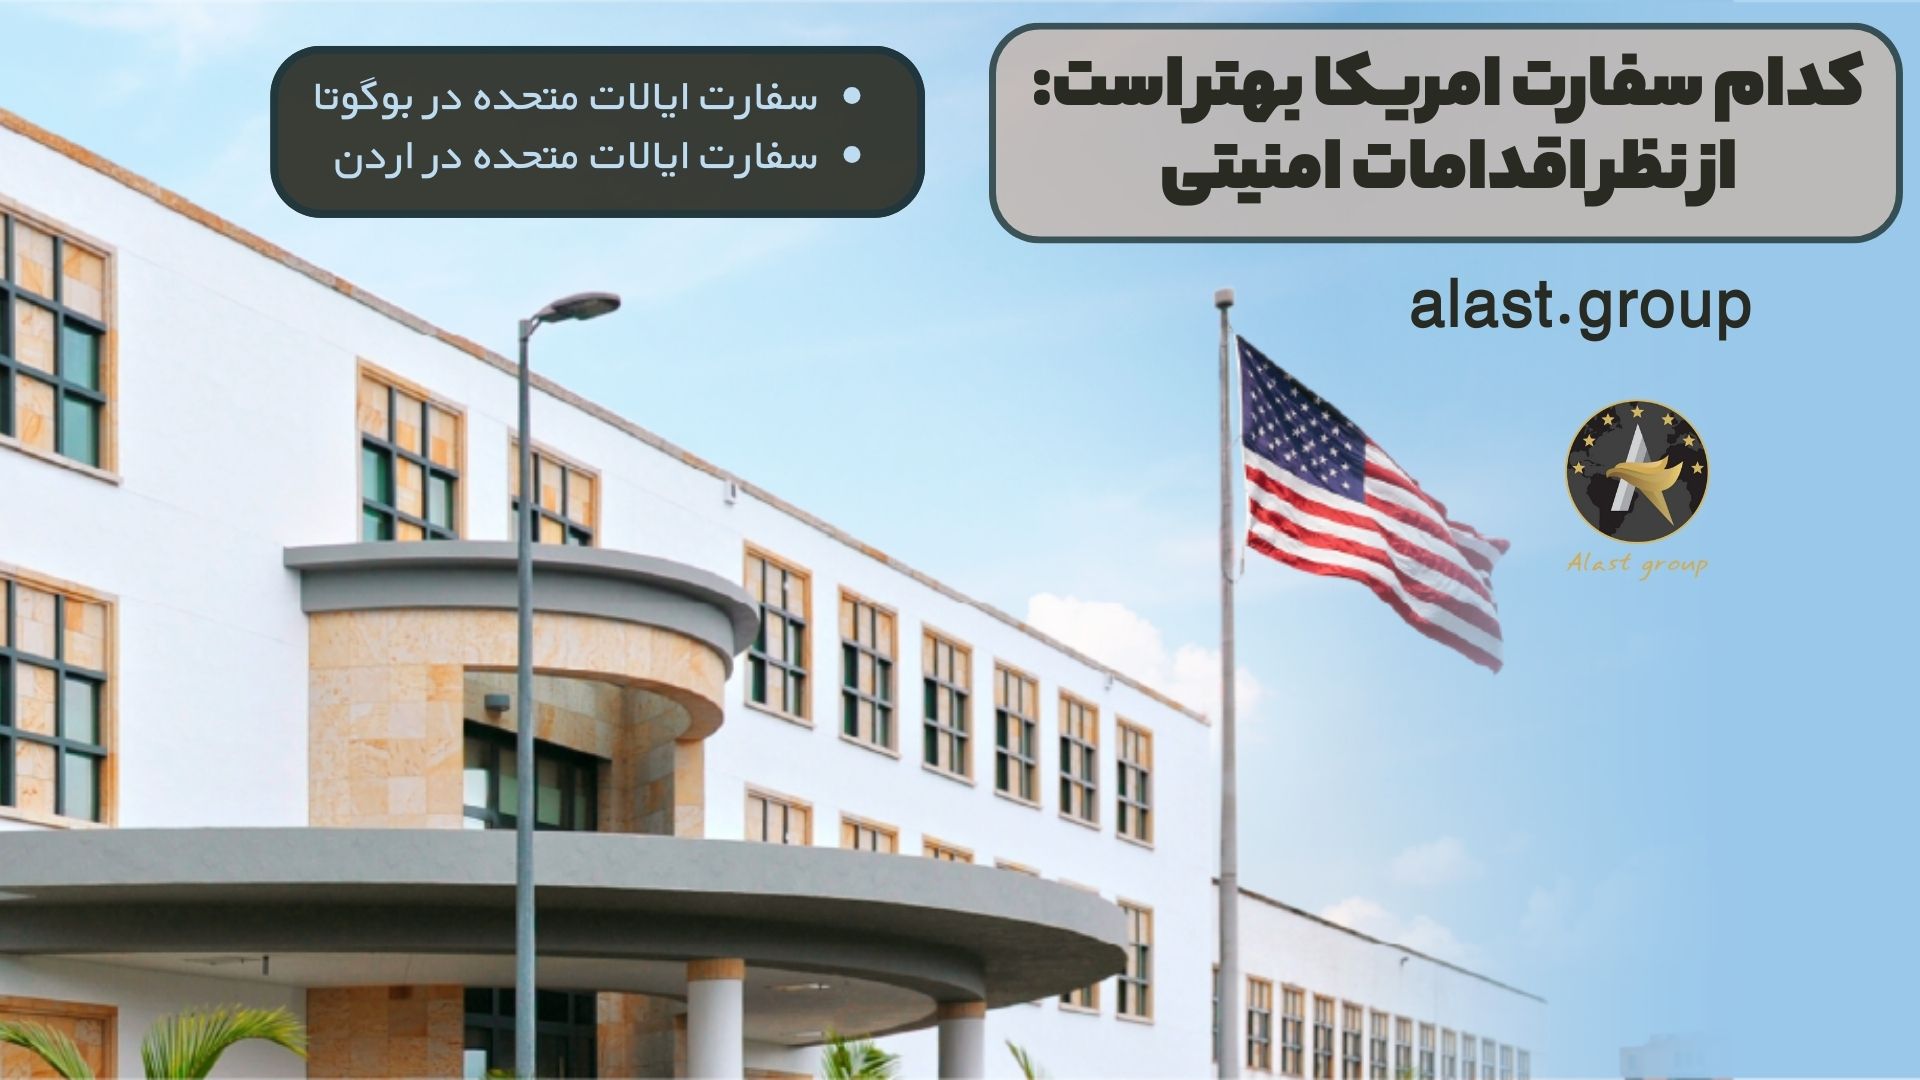 کدام سفارت امریکا بهتر است: از نظر اقدامات امنیتی